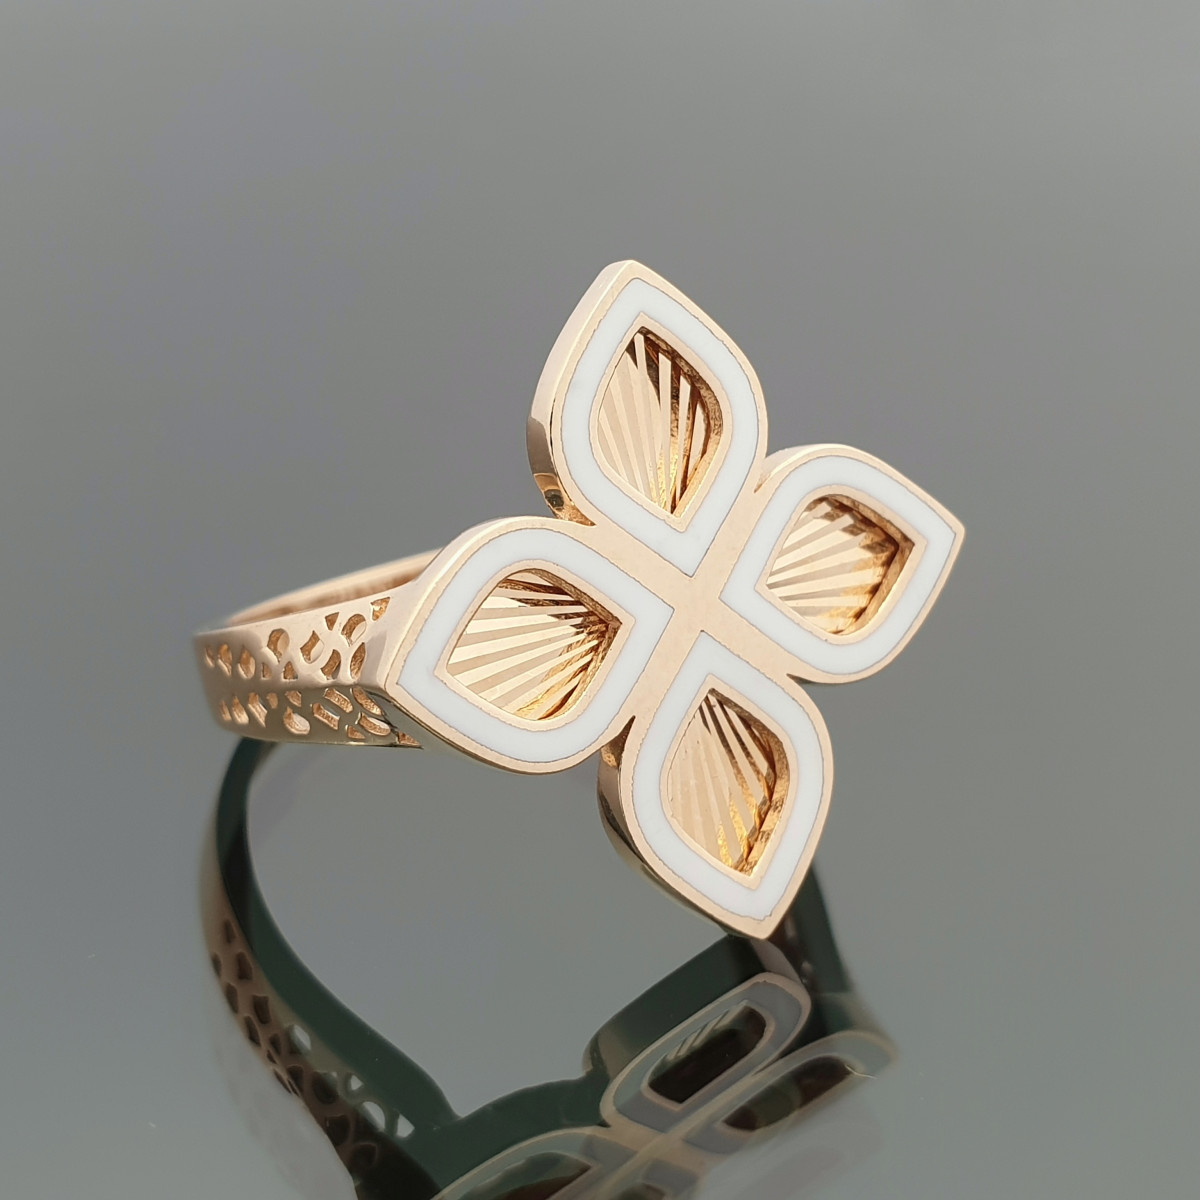 Moteriškas auksinis žiedas "Balta gėlė" (1217) 1